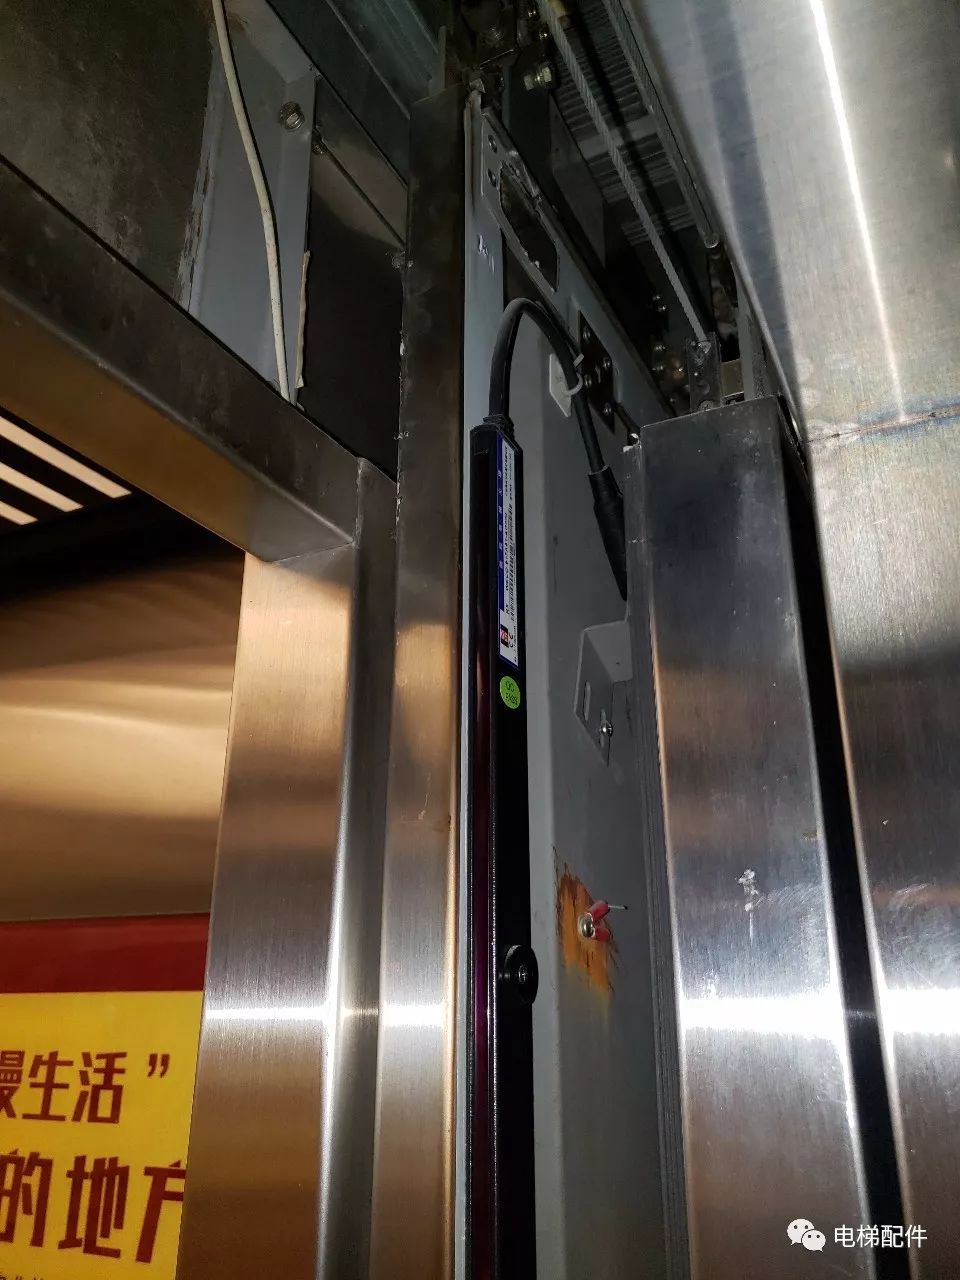 电梯人说:光幕装成这样也没人改 没责任心6南京总统府的电梯,1935年